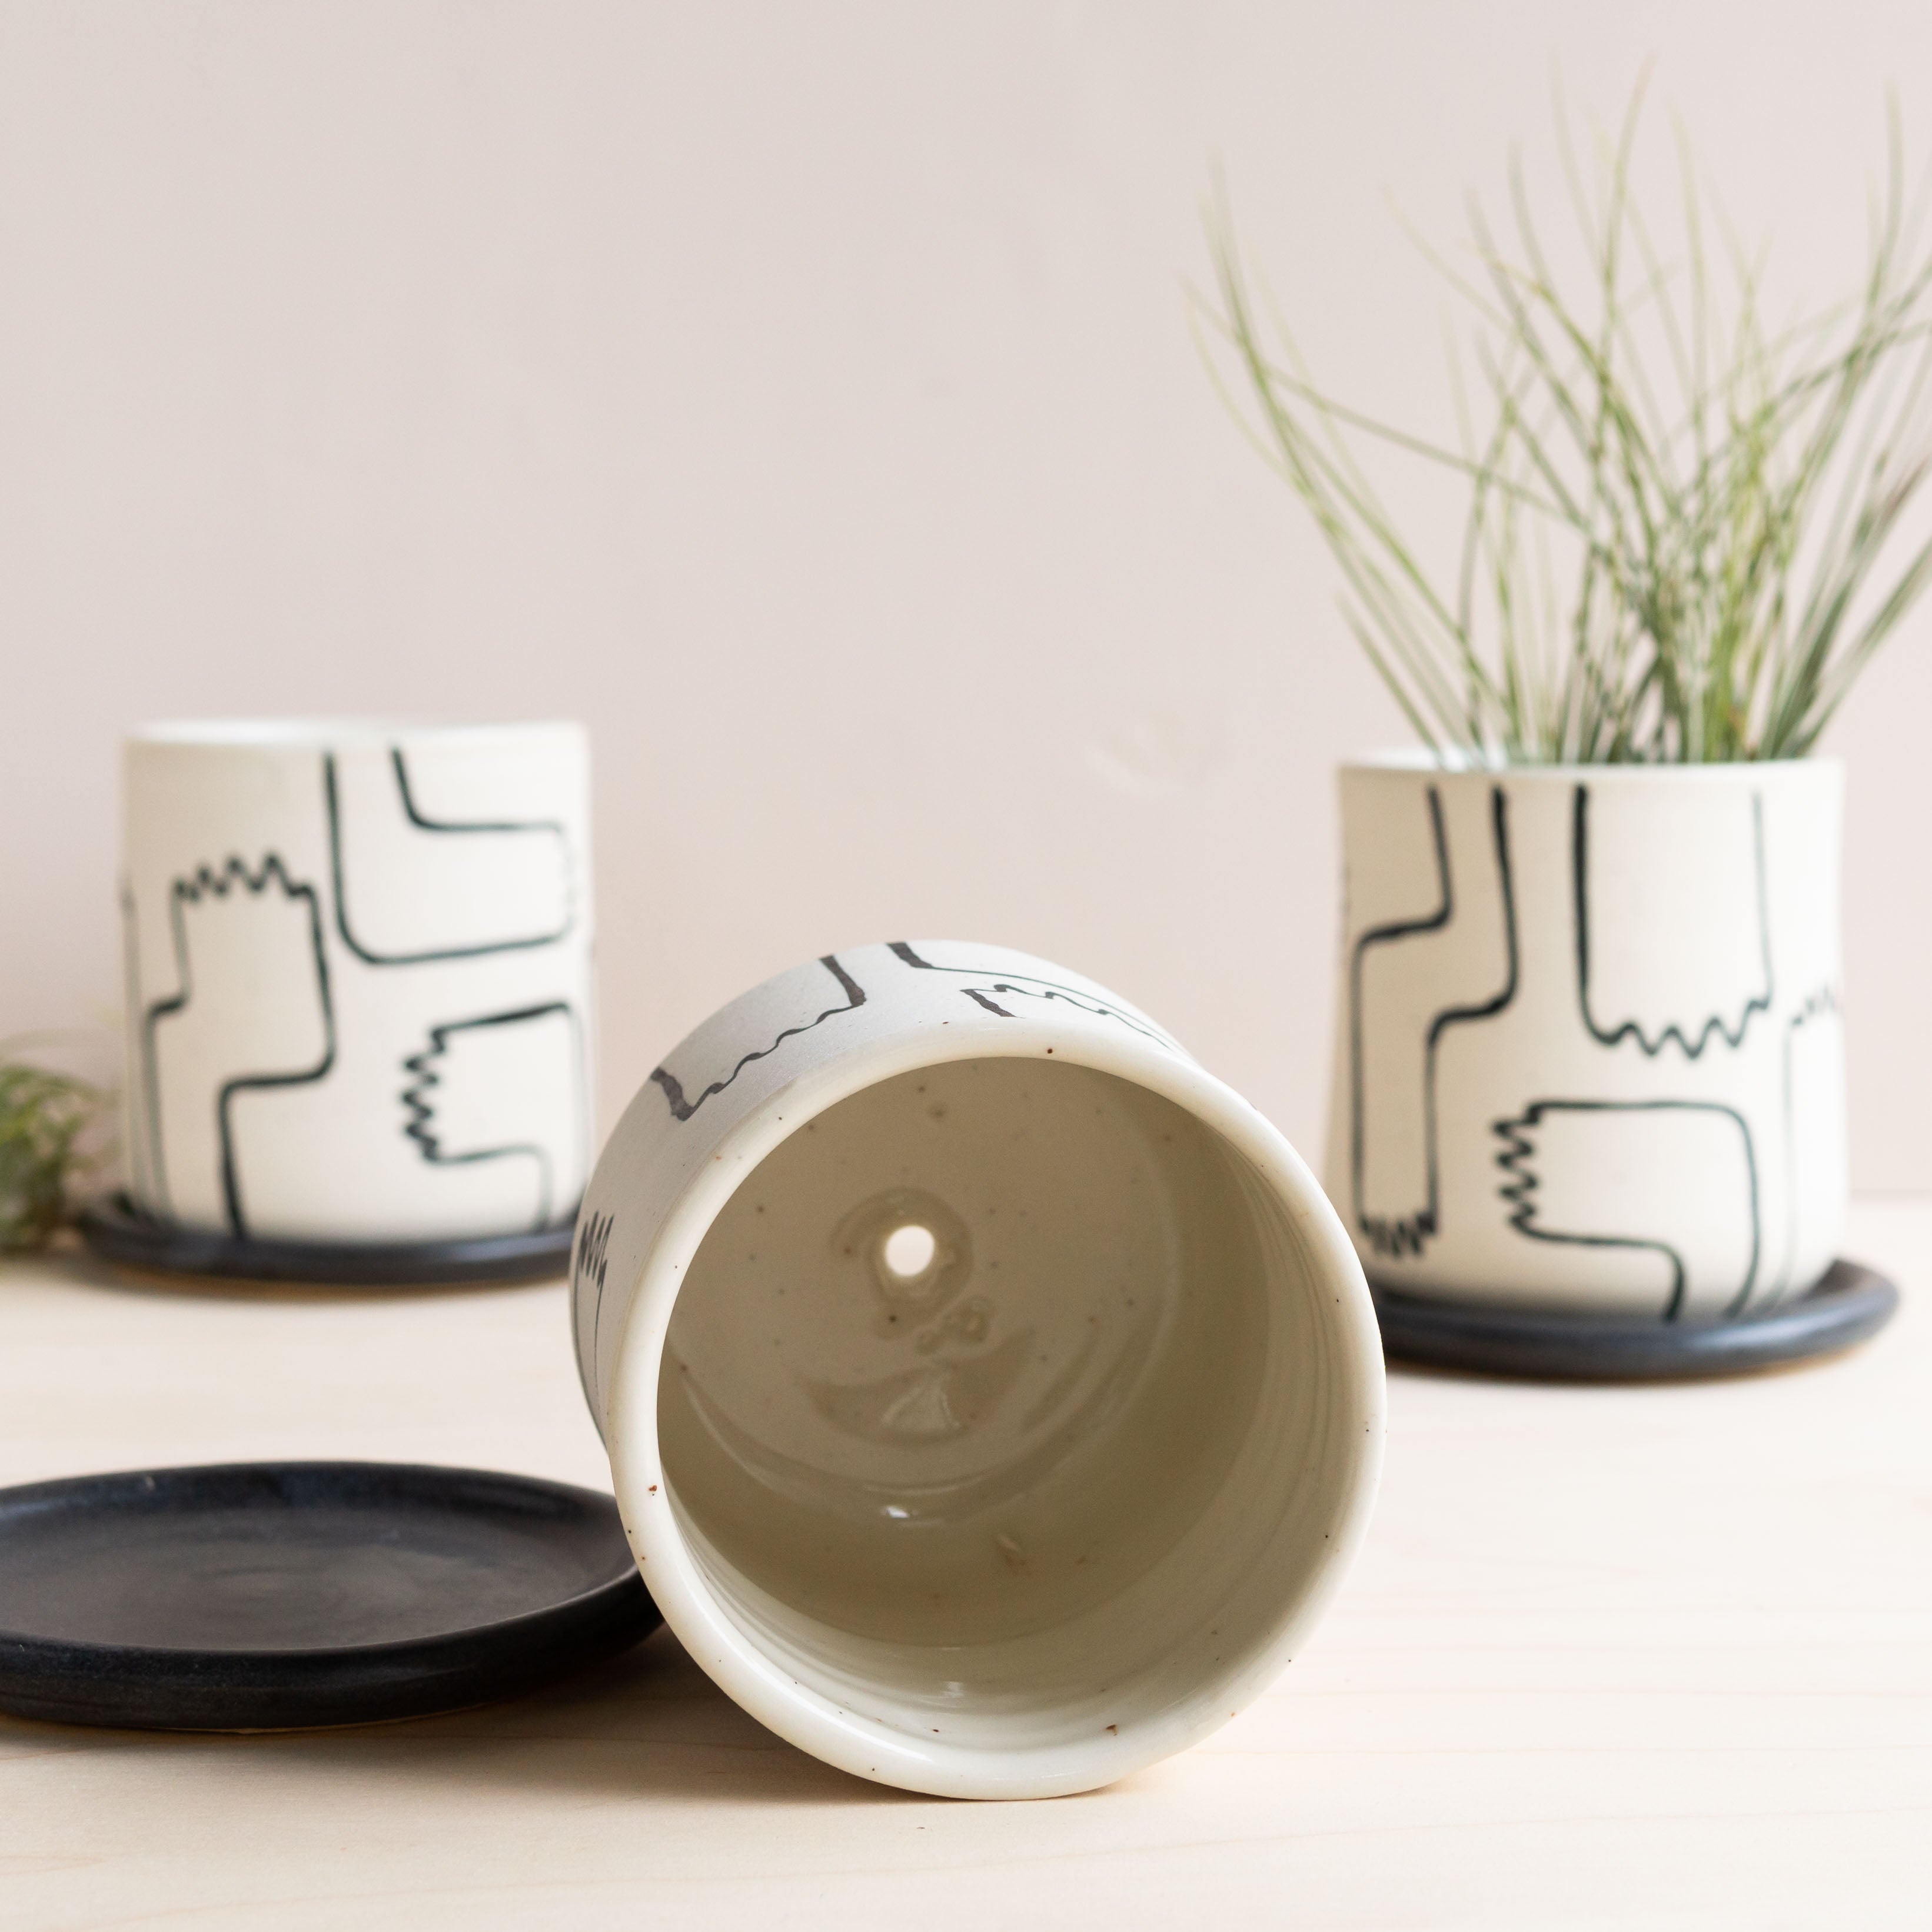 Echeri Ceramics: Manos Planter and Plate